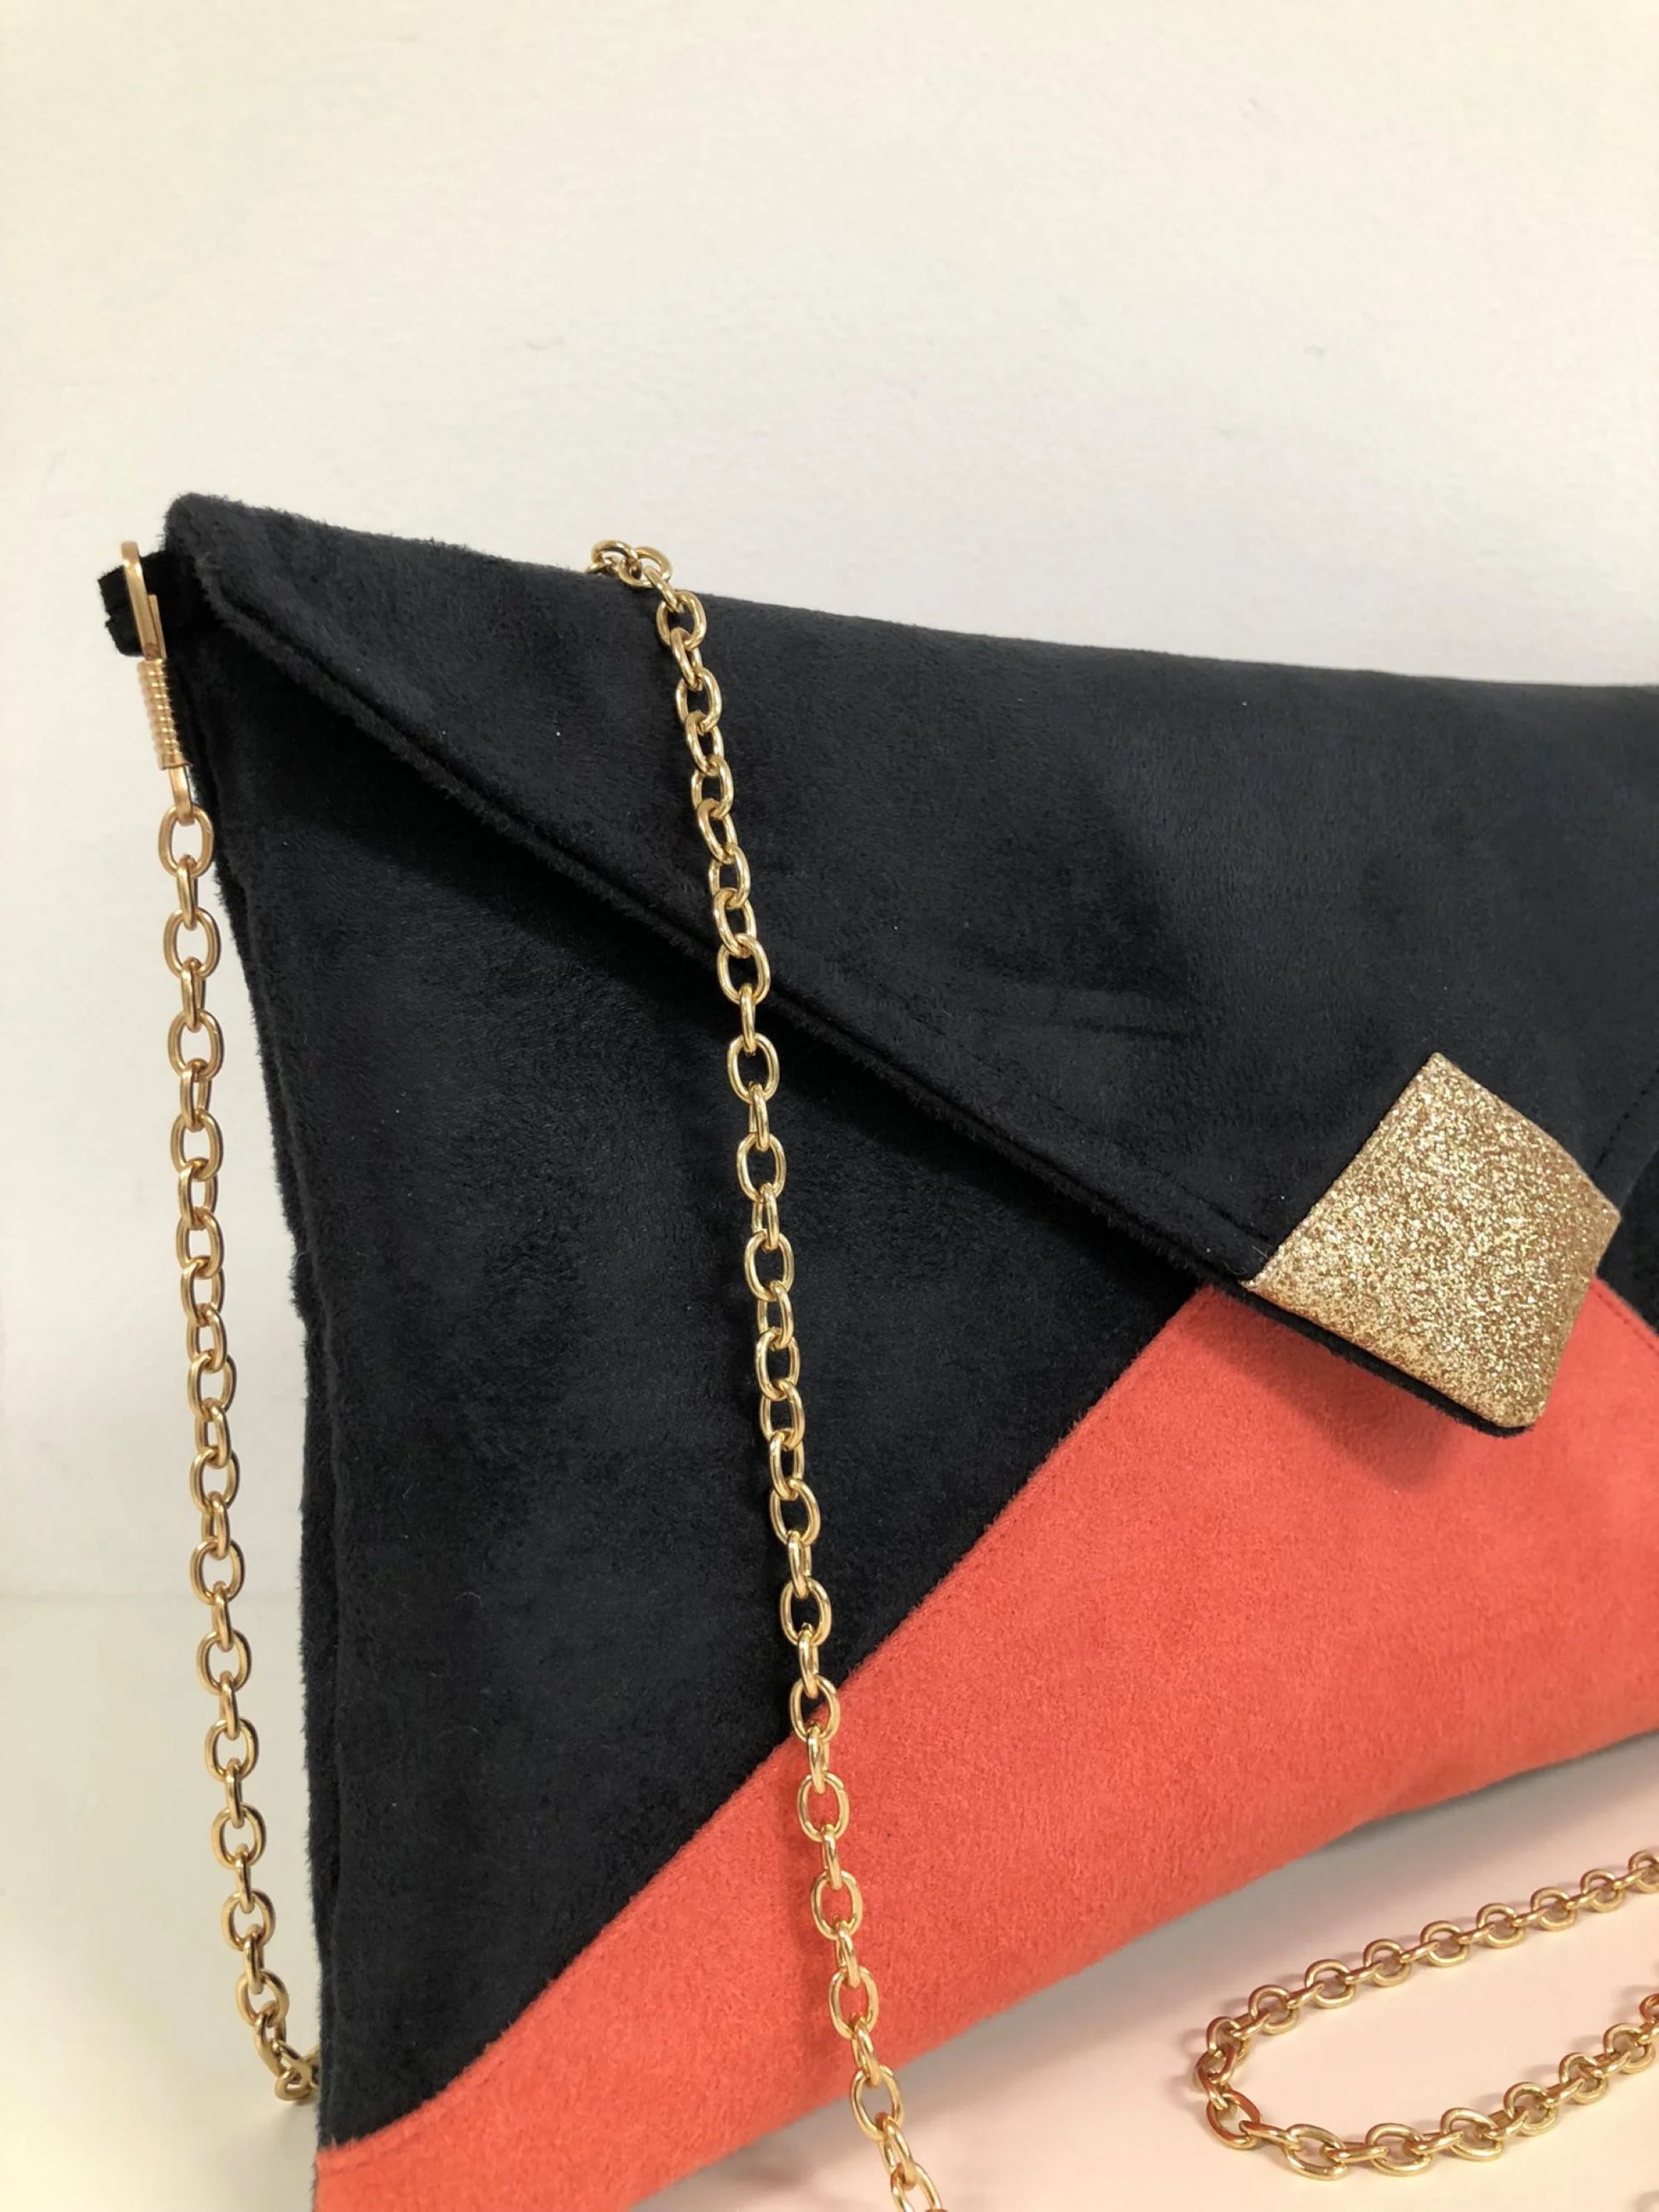 La chainette dorée amovible du sac pochette Isa noir et corail à paillettes dorées.